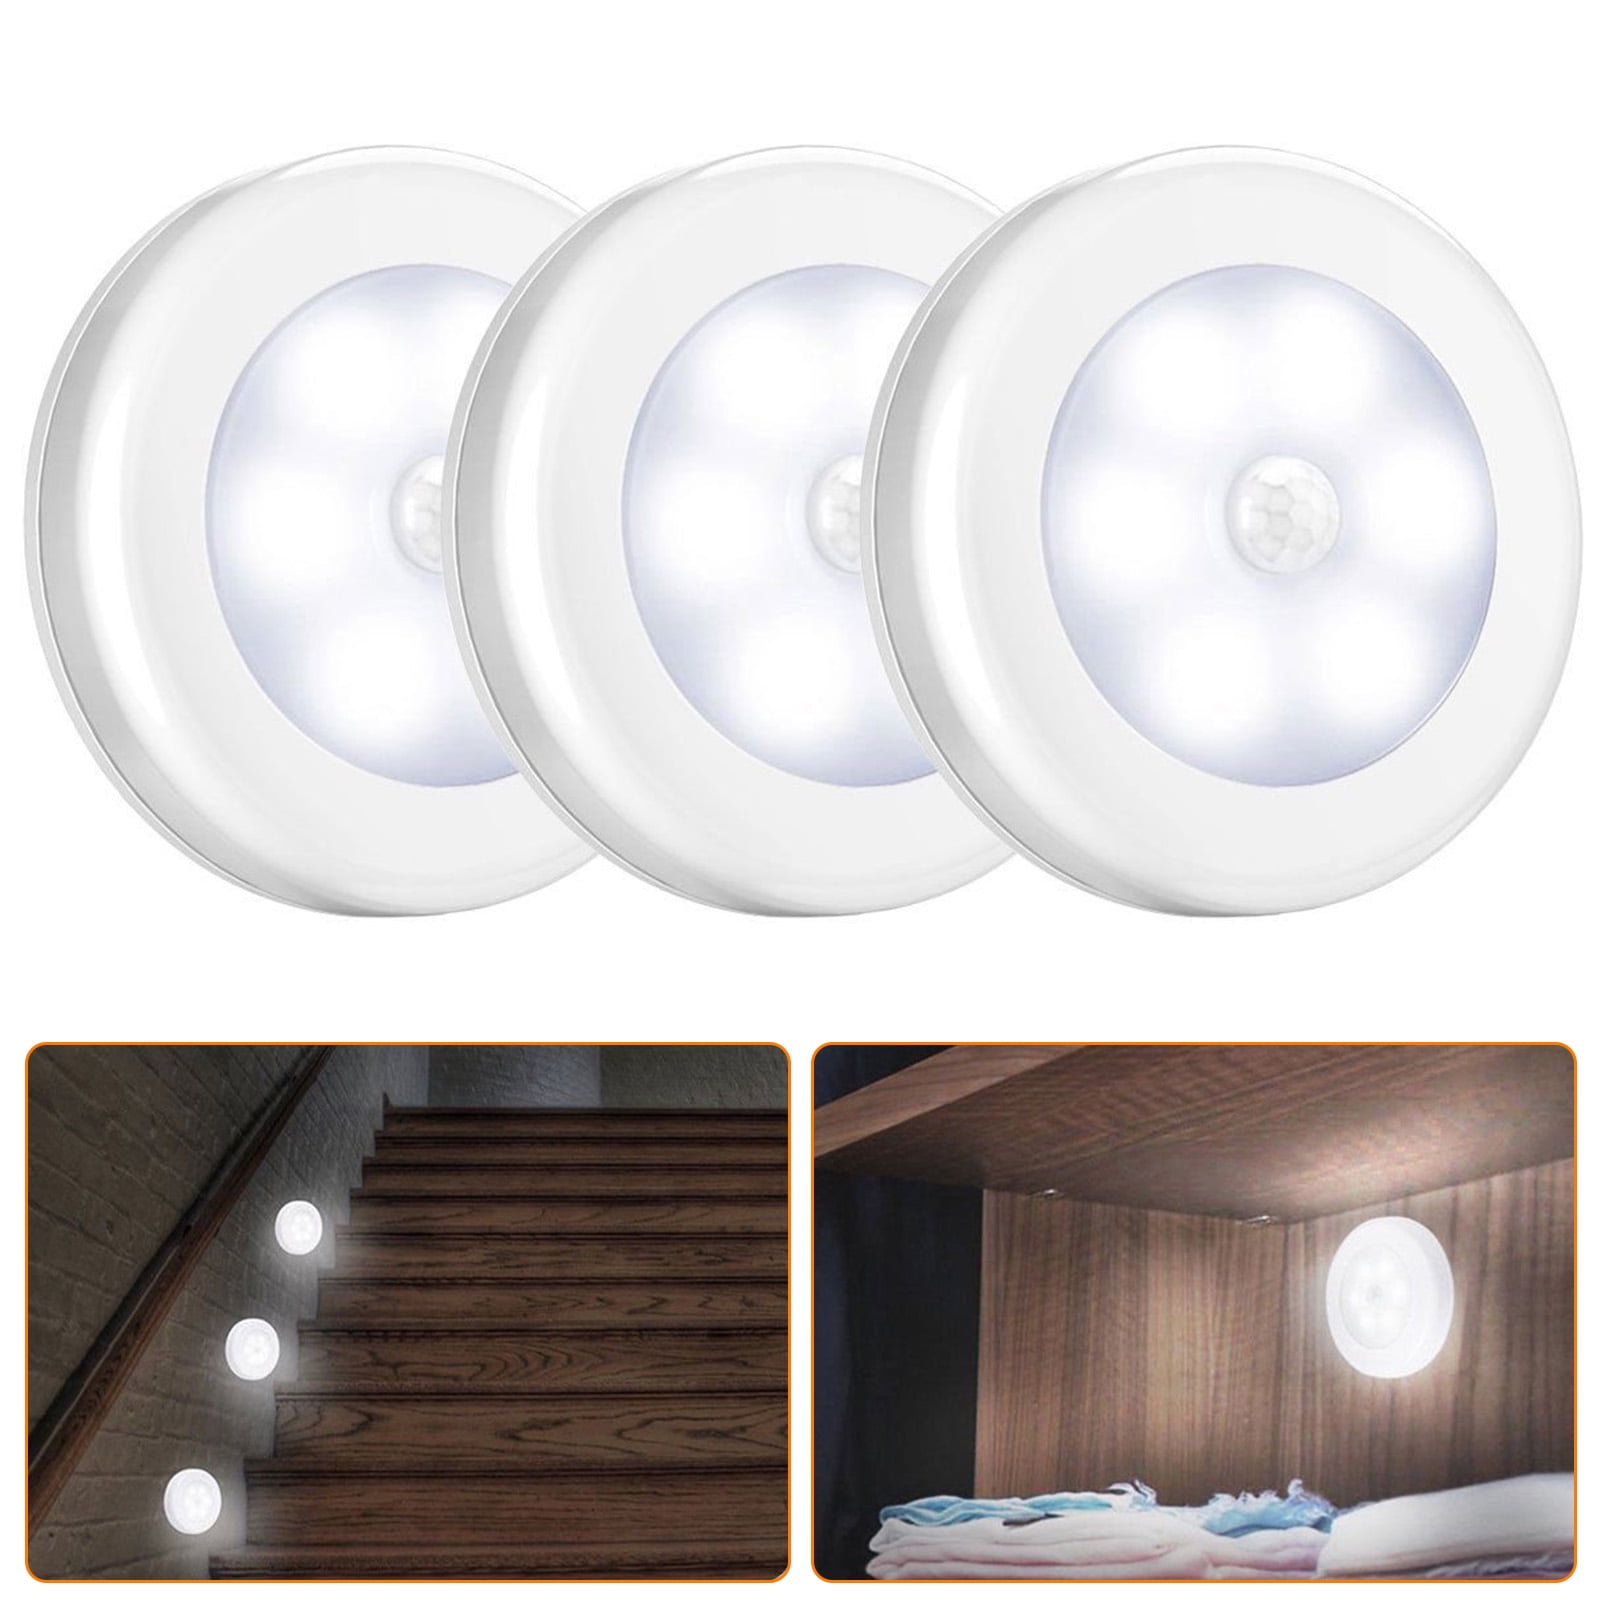 US EU Plug Auto LED Light Sensor Light-operated Bed Night Moon Lamp Kids Room 